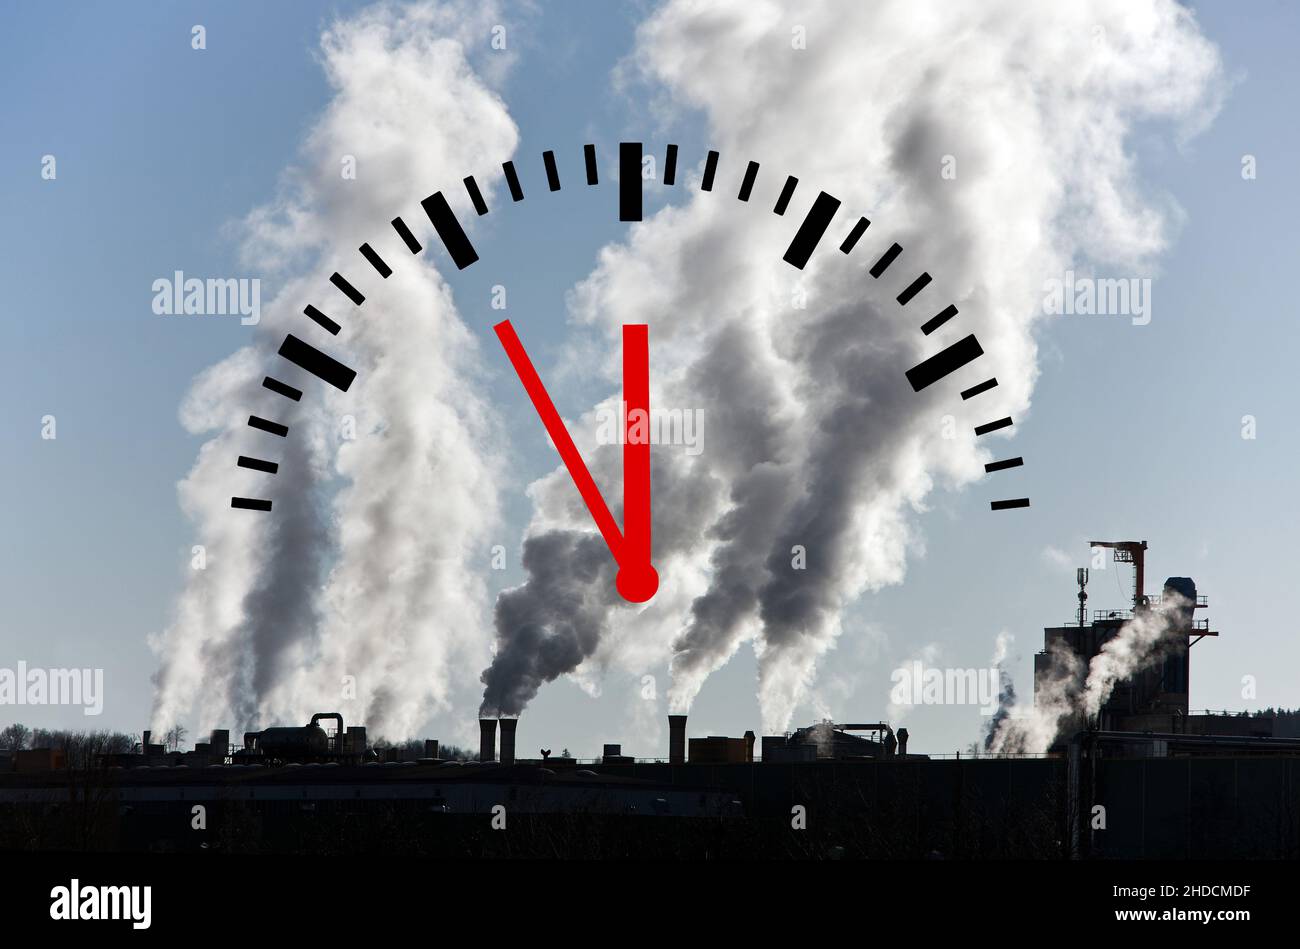 Kohlekraftwerk, Umweltverschmutzung, Schadstoffausstoss, Uhr zeigt 5 vor 12, Stock Photo